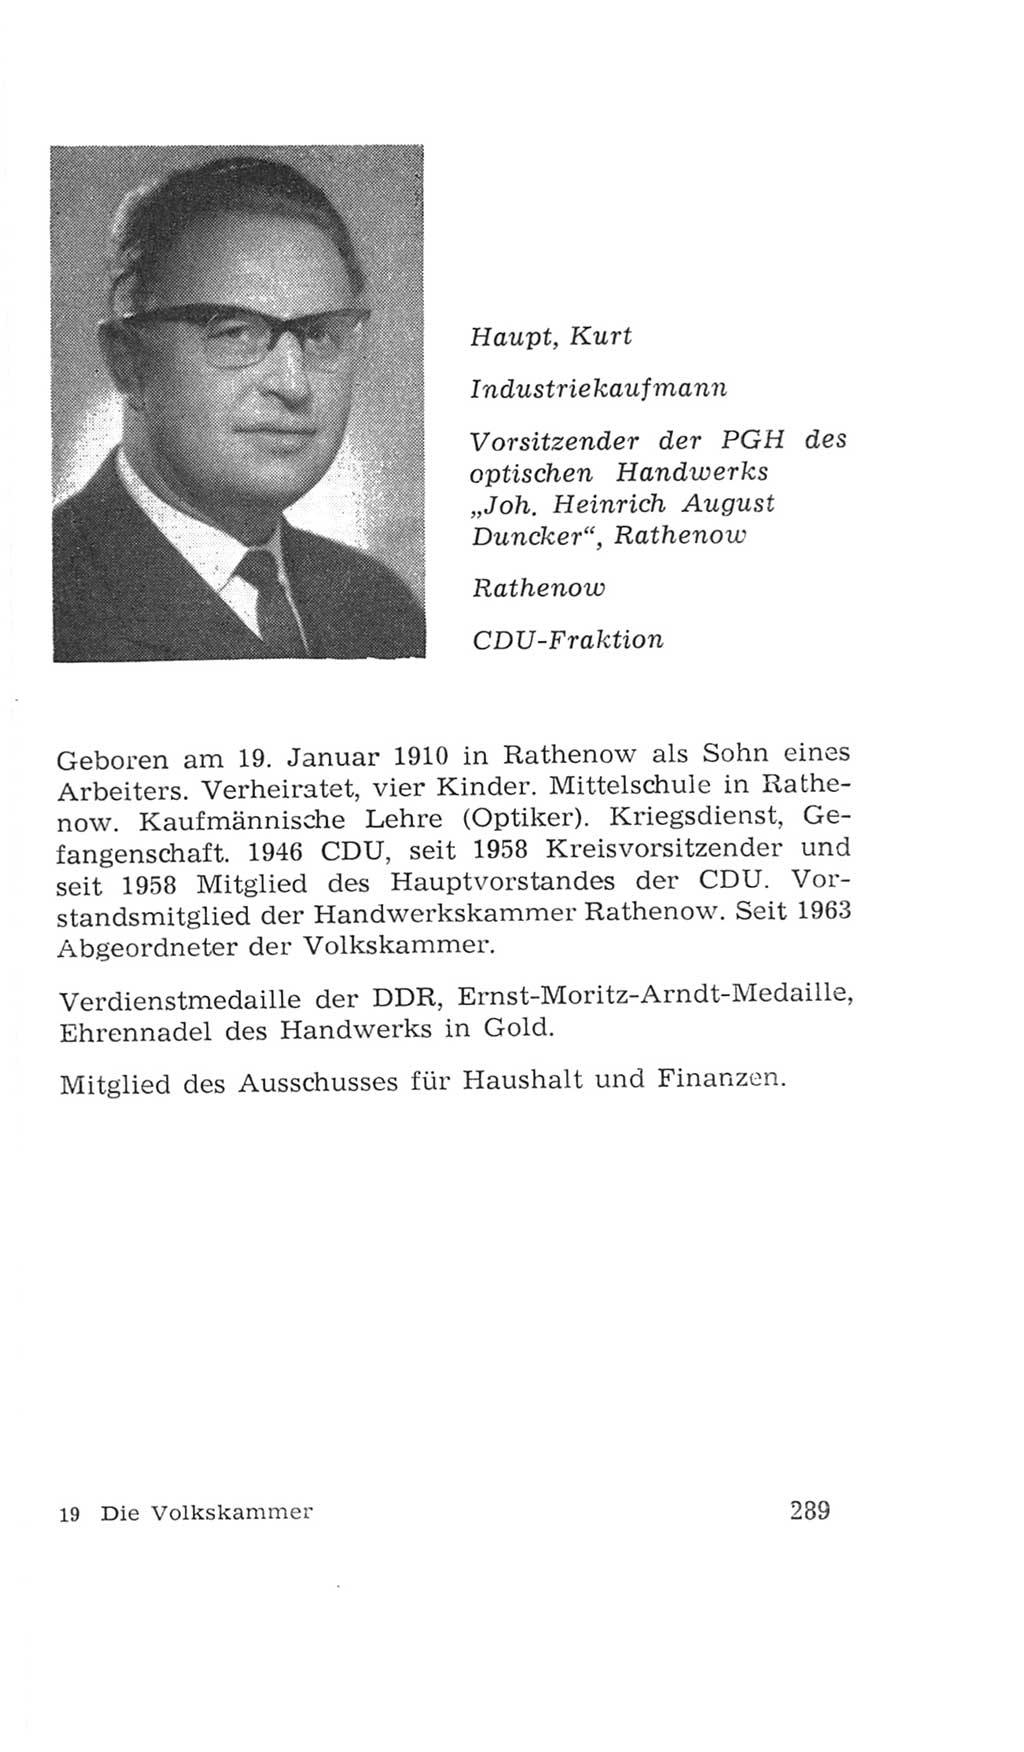 Volkskammer (VK) der Deutschen Demokratischen Republik (DDR), 4. Wahlperiode 1963-1967, Seite 289 (VK. DDR 4. WP. 1963-1967, S. 289)